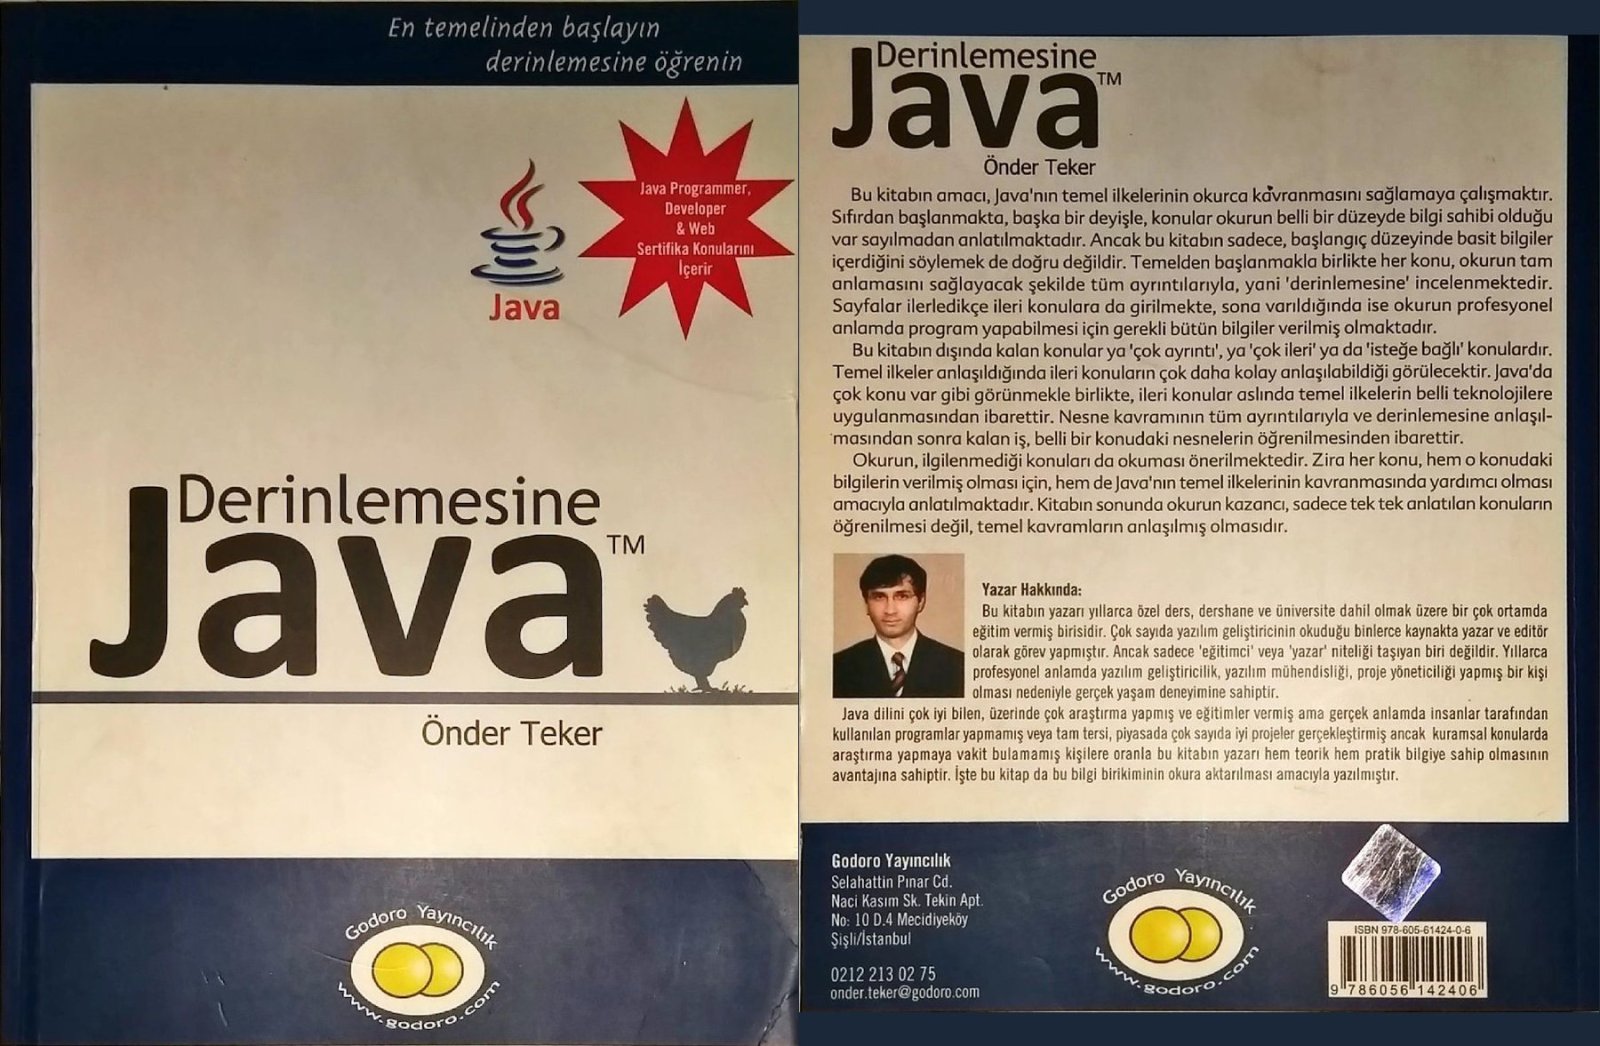 Java öğrenmek istiyorum ama sağlam bir şekilde 